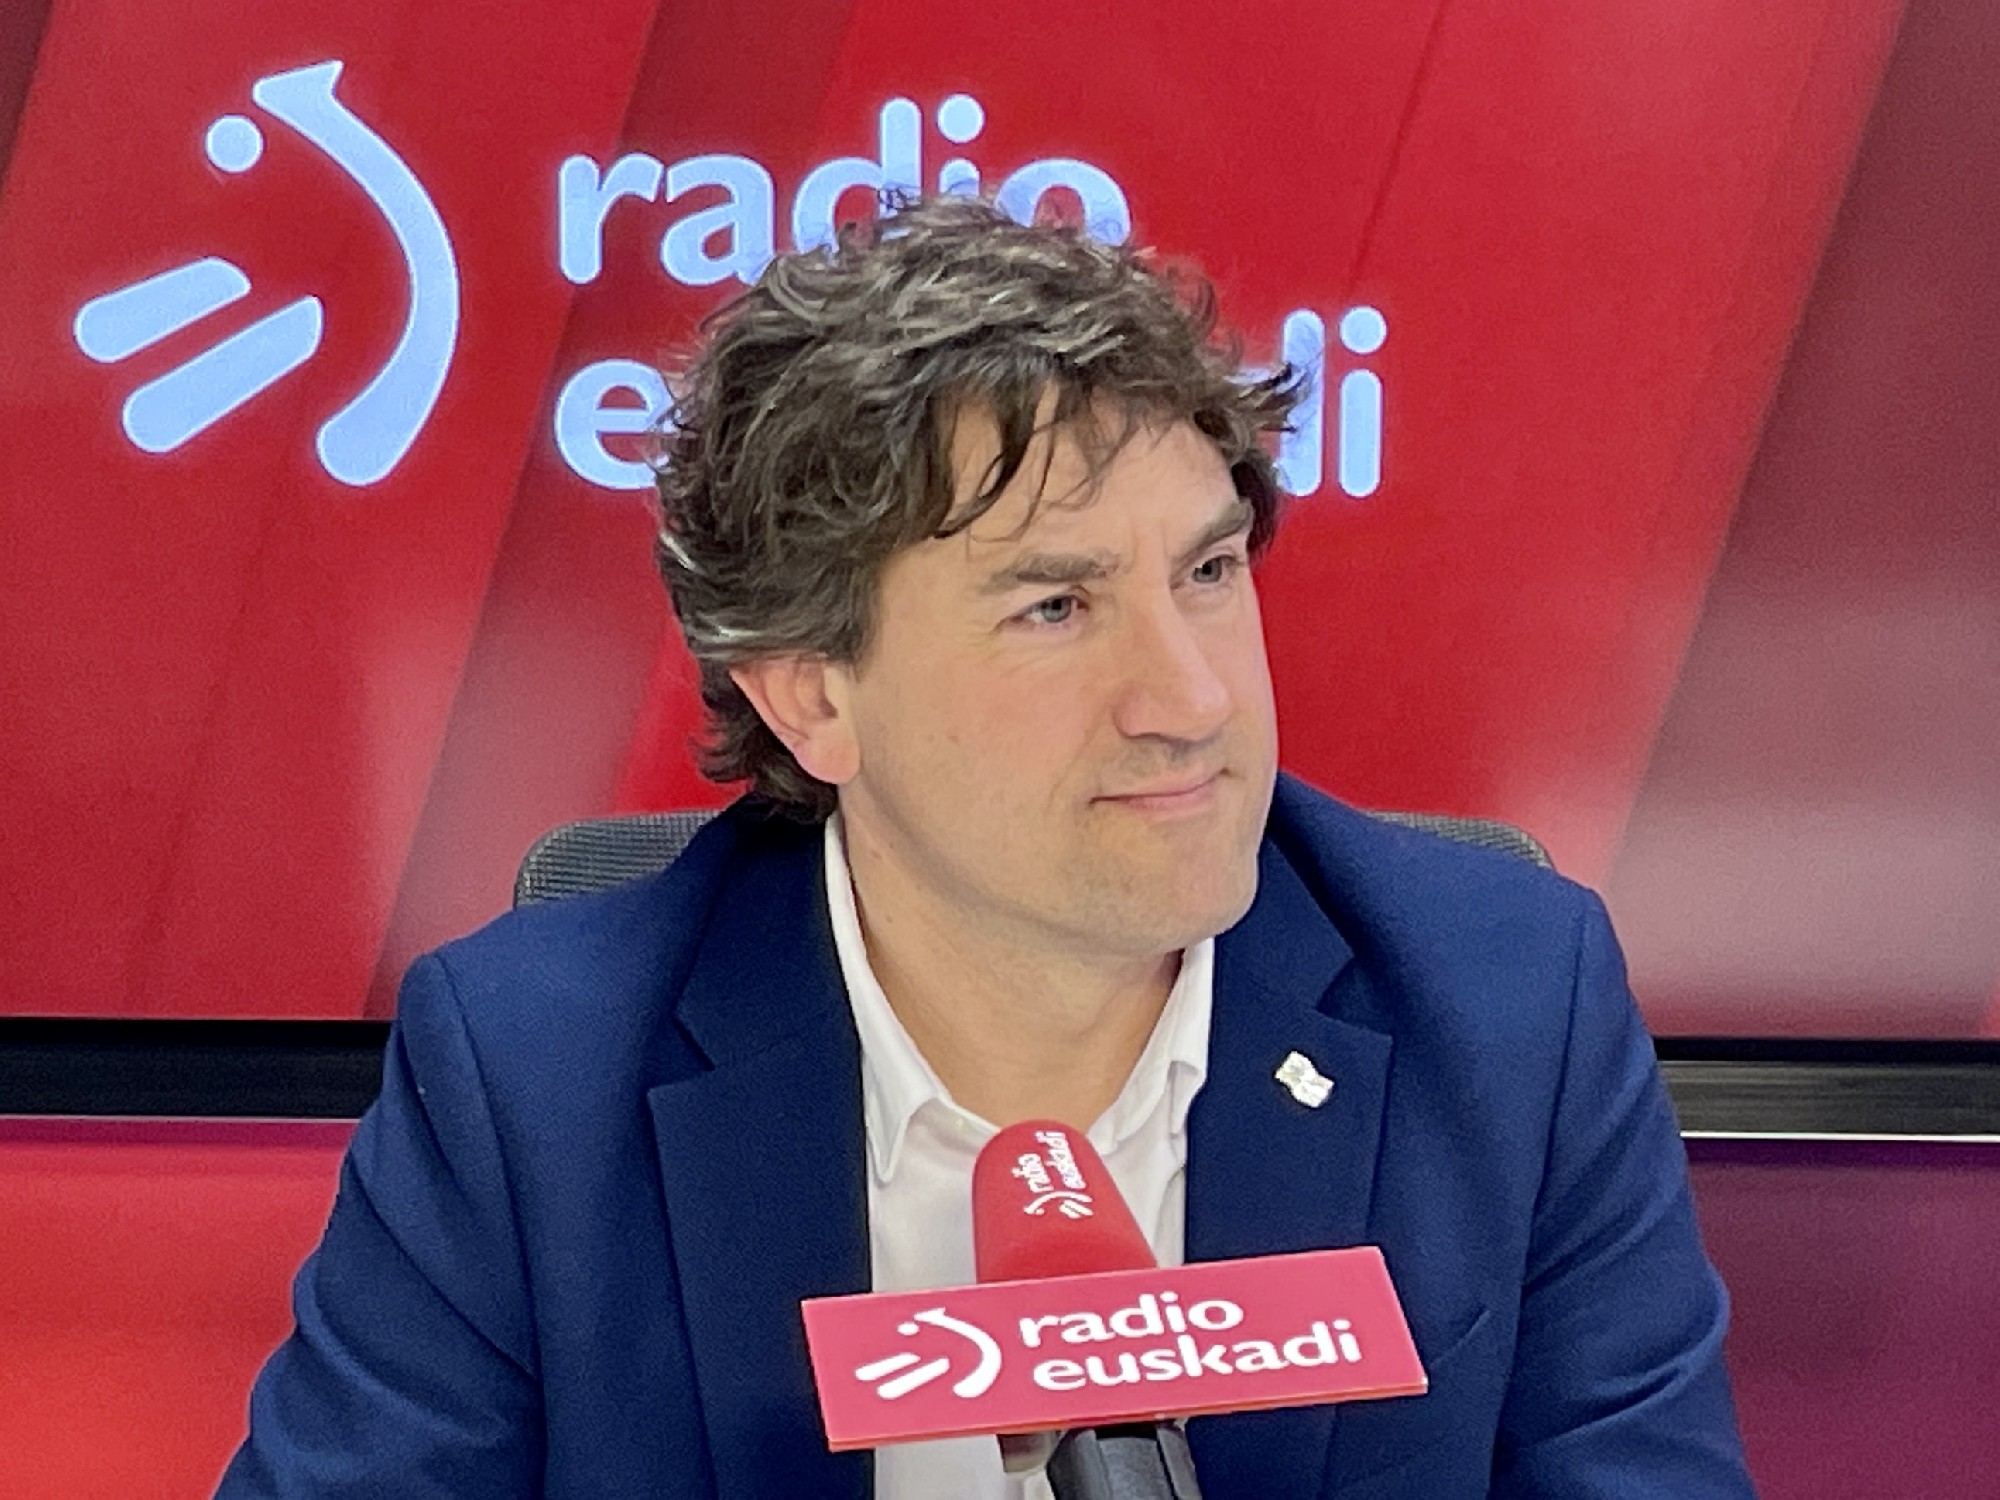 El Secretario General del PSE-EE, Eneko Andueza, en los estuidos de Radio Euskadi | Foto: Socialistas Vascos.